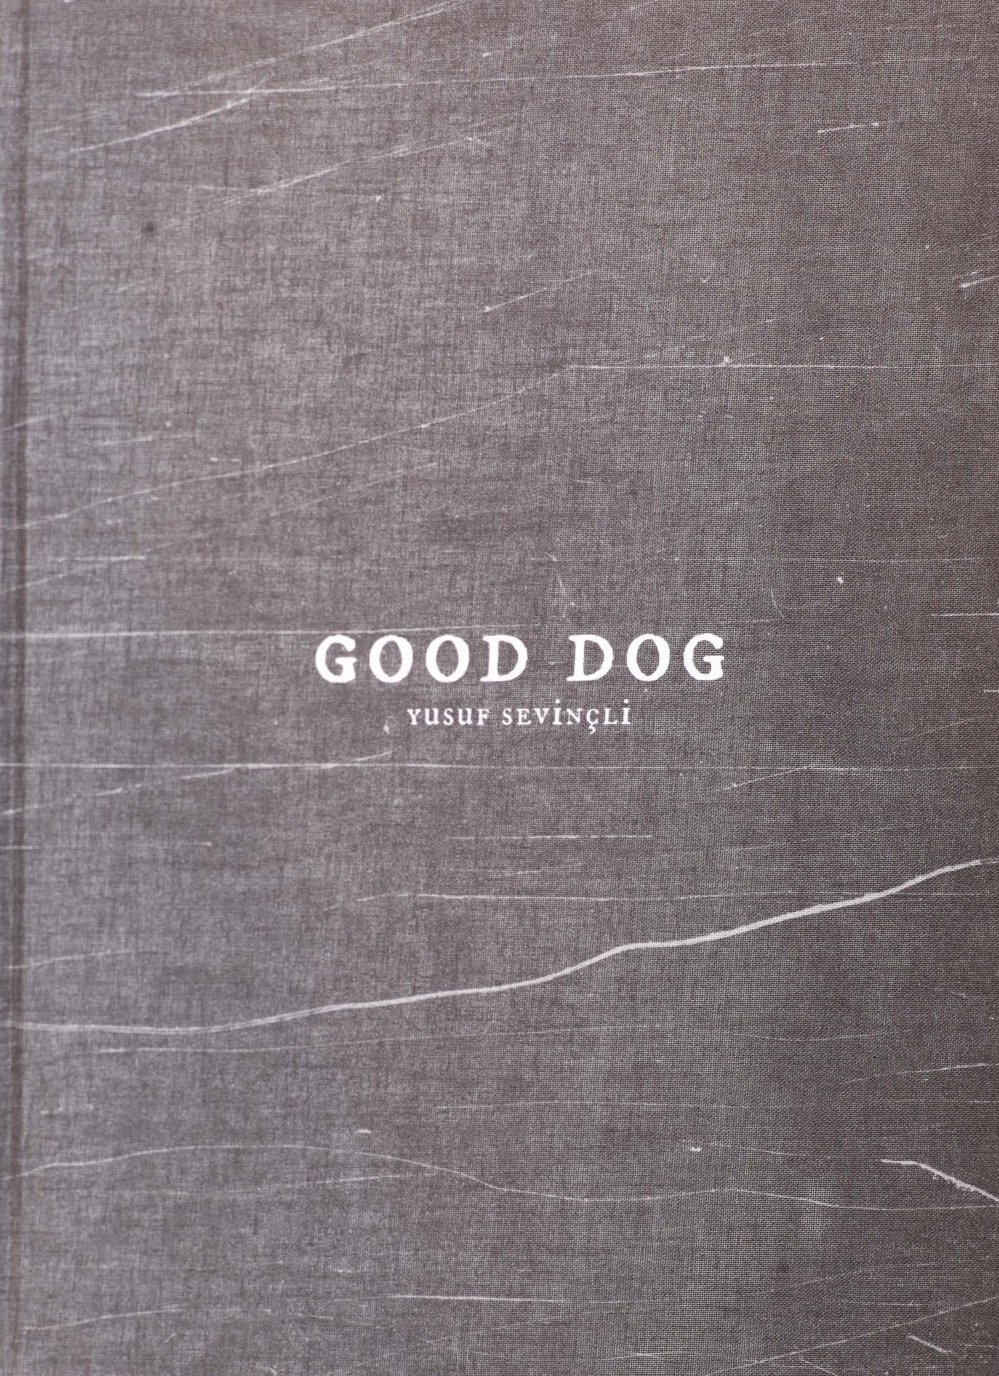 Good Dog by Yusuf Sevinçli (Signed Copy)